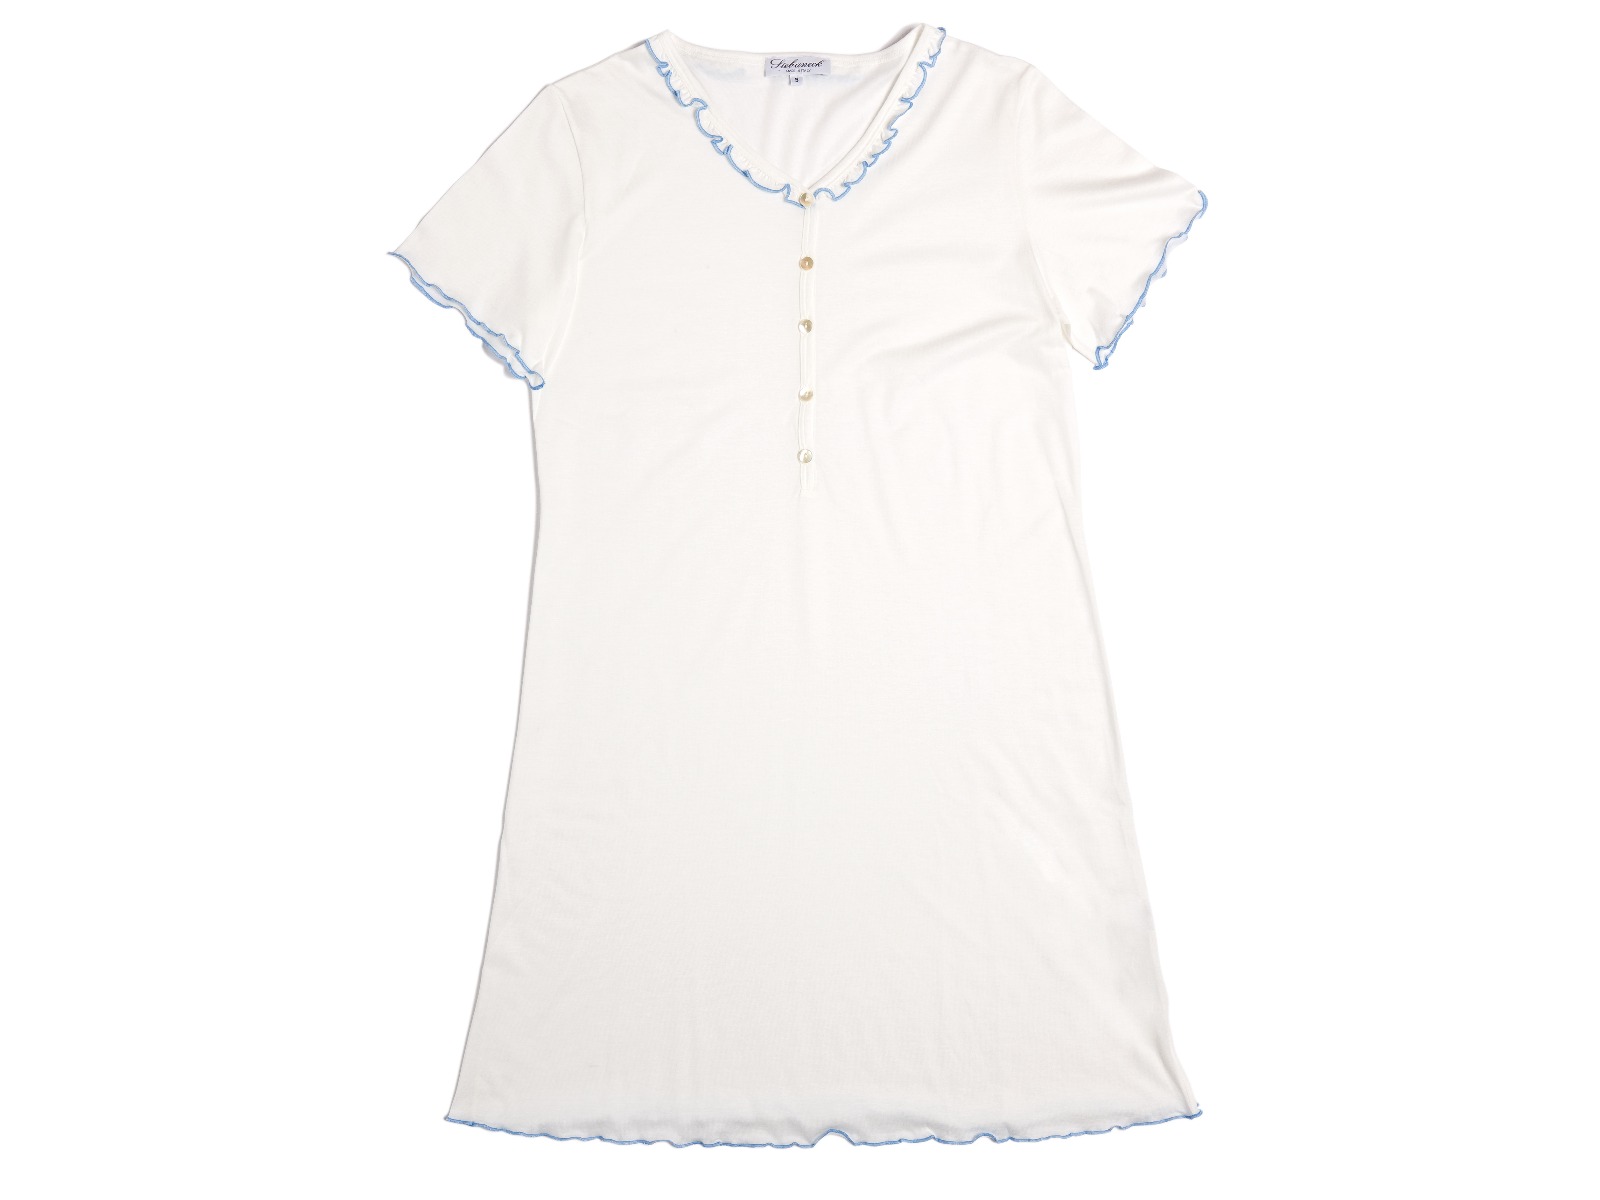 Siebaneck, i pigiami artigianali italiani: - Donna - mod. lilli bianco/azzurri